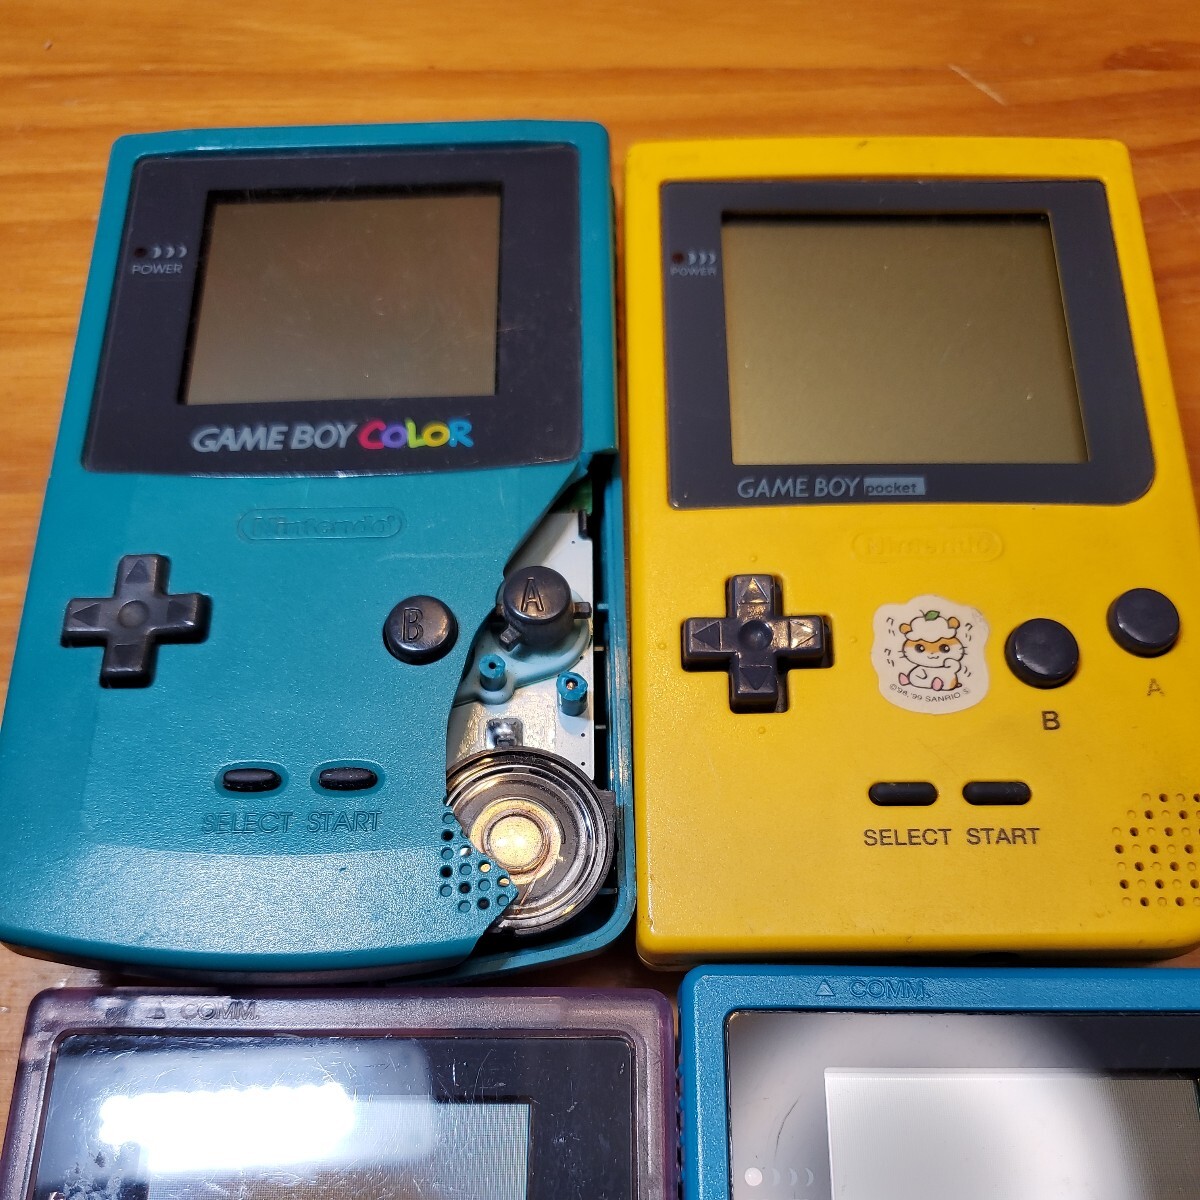 [ Junk ] nintendo Nintendo Game Boy Game Boy цвет Game Boy Advance SP GAMEBOY COLOR AdvanceSP